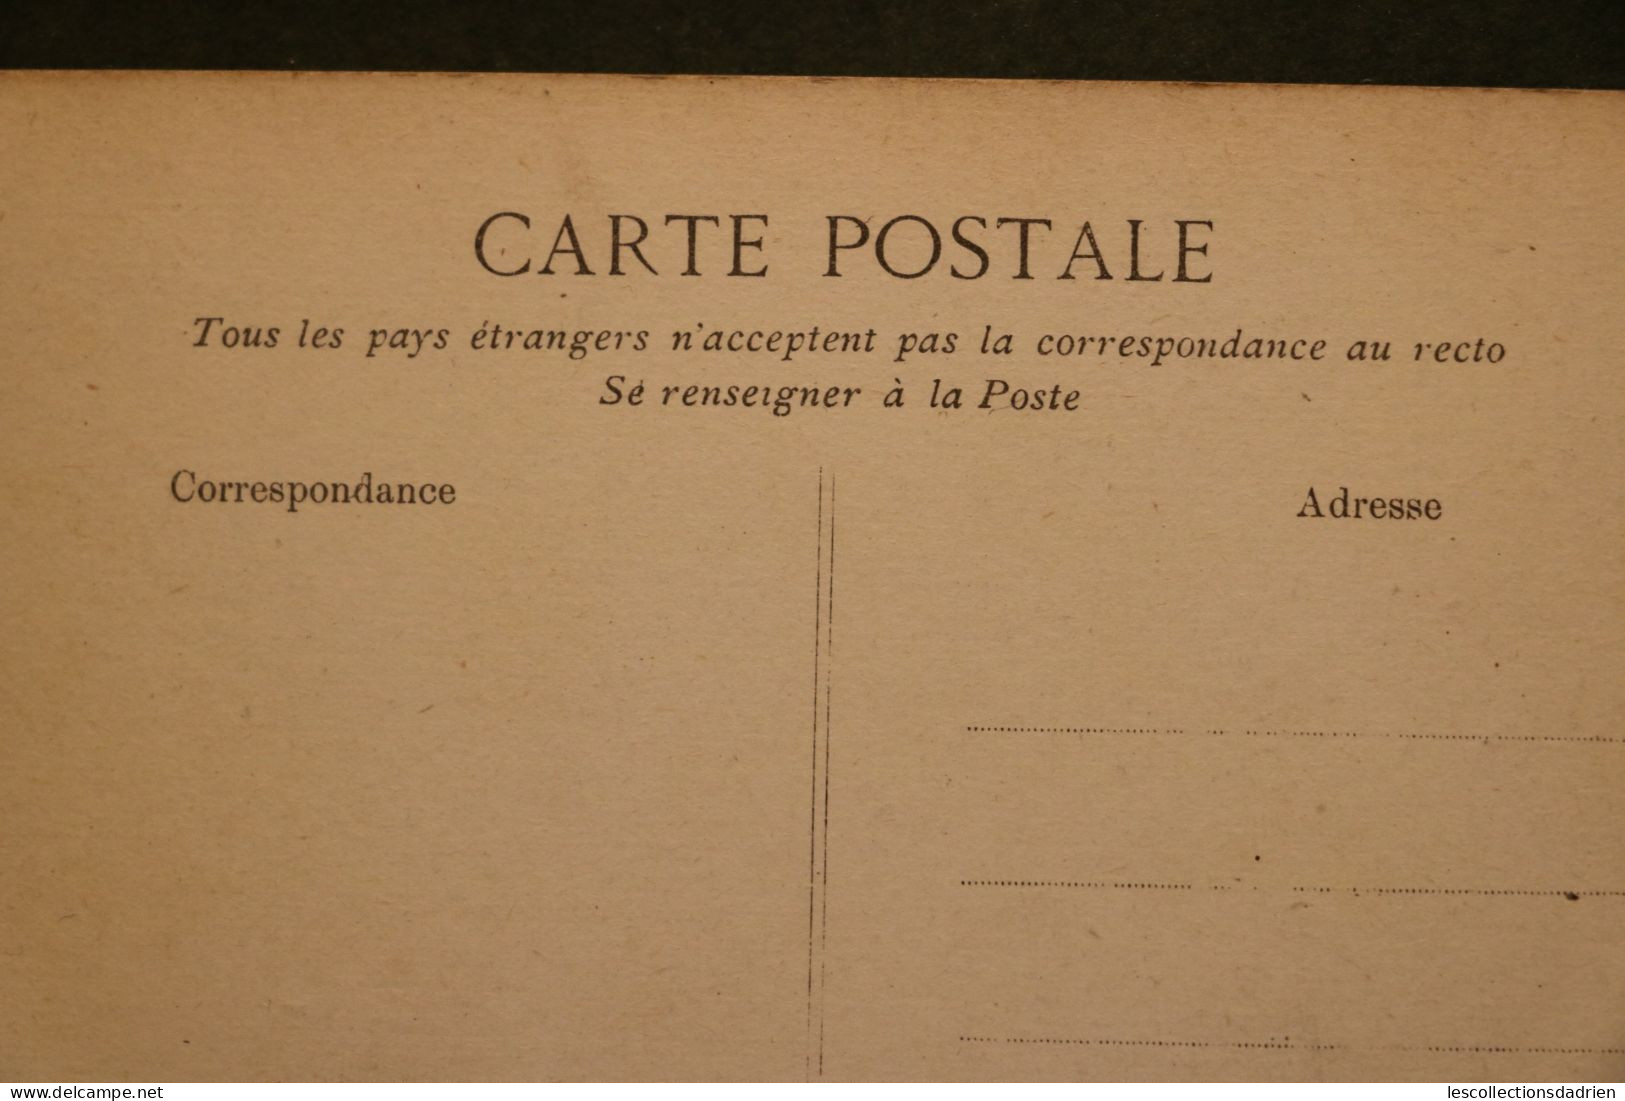 Carte postale ancienne - Versailles hameau du Petit Trianon le Moulin